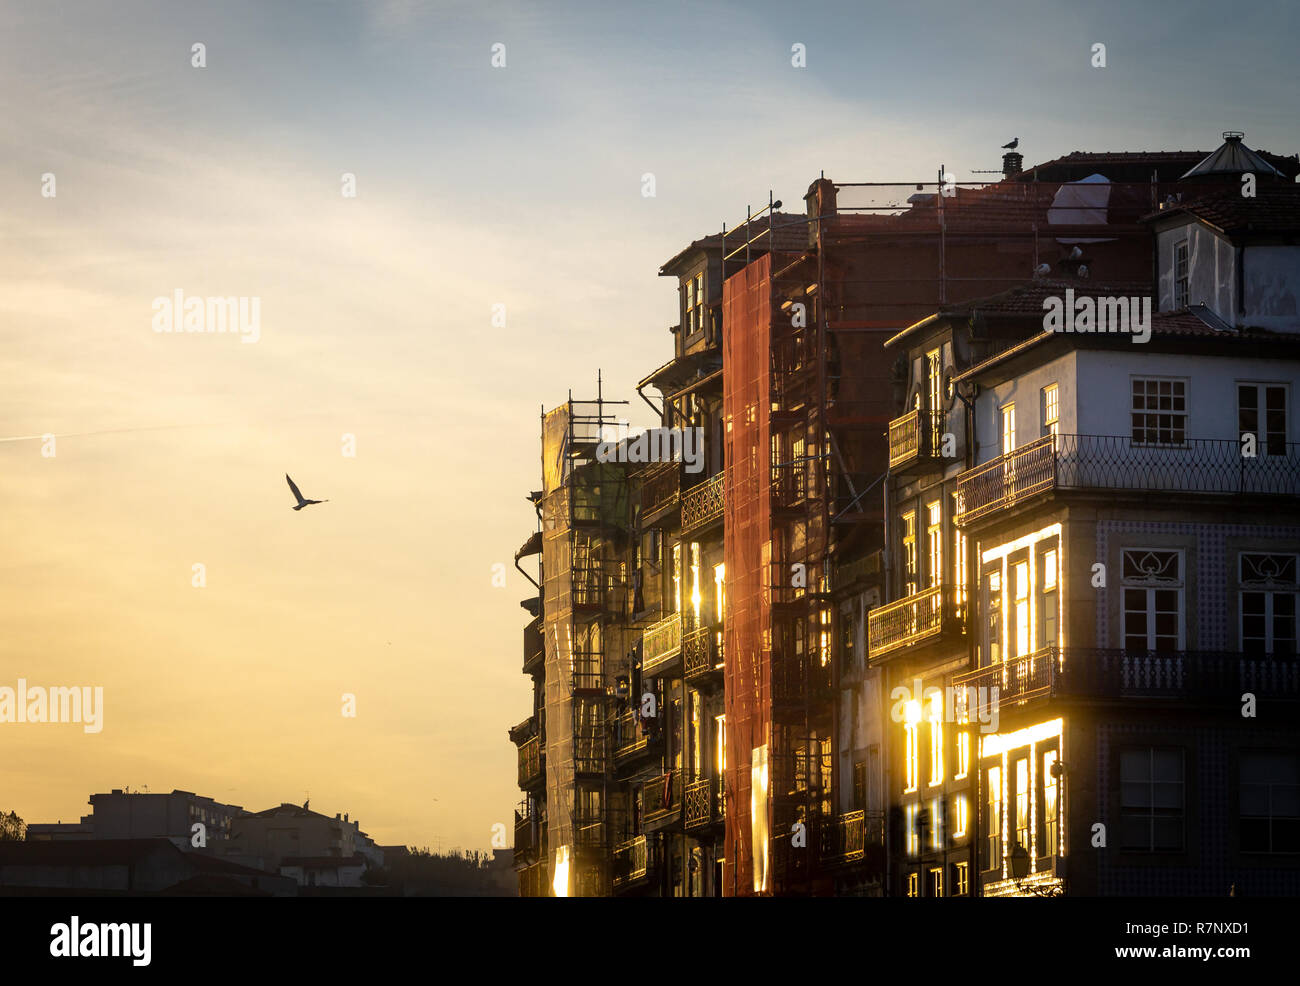 Seitliche Sicht auf verschiedene Gebäude, Fassaden im Bau in Porto, Portugal, unter der späten warmes Licht von der Sonne. Möwe das Fliegen in den Himmel. Warme l Stockfoto